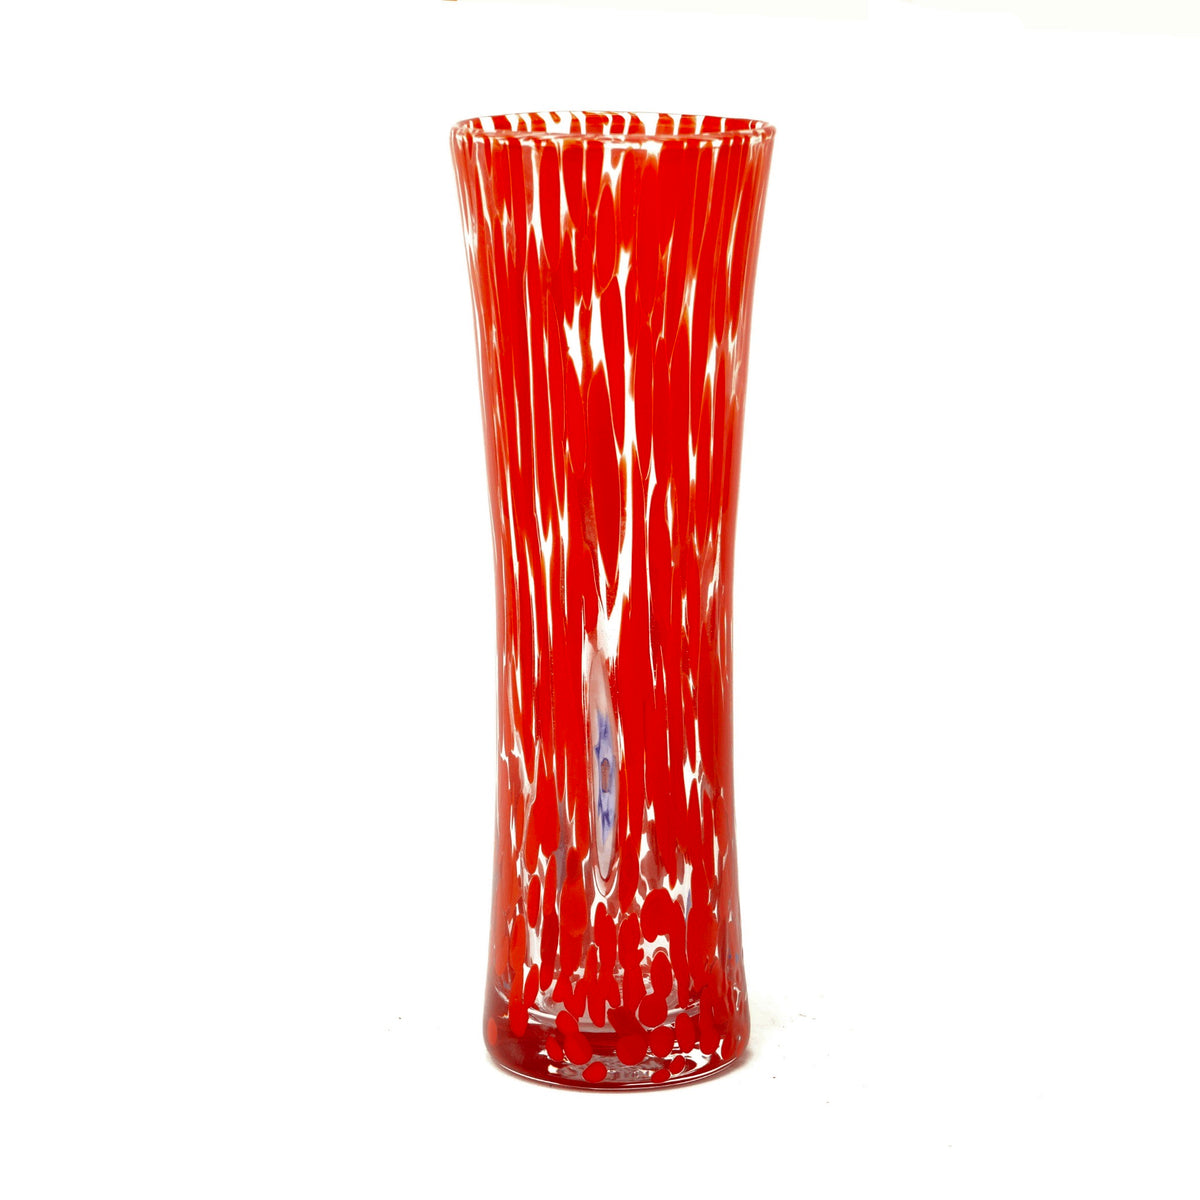 Murano Glass Bud Vase, Contemporary, Made in Italy - My Italian Decor